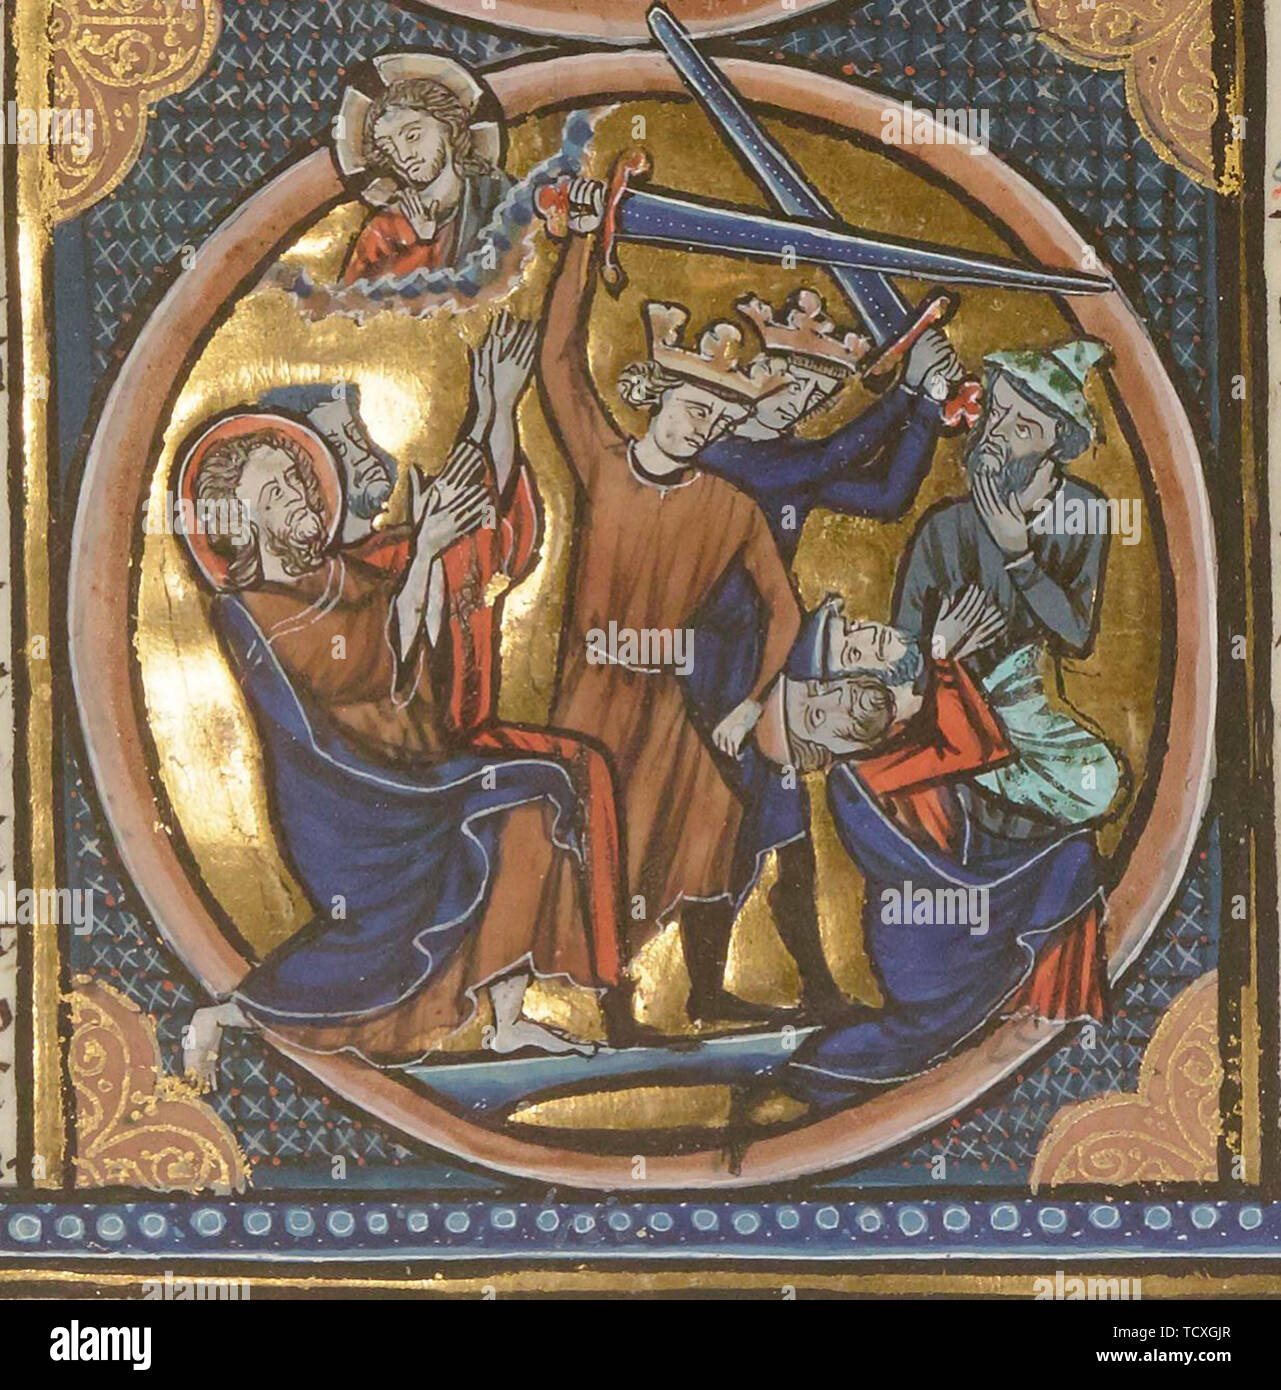 Ejecución de los judíos. Desde Emblèmes bibliques en miniatura, ca 1220-1230. Autor: Anónimo. Foto de stock